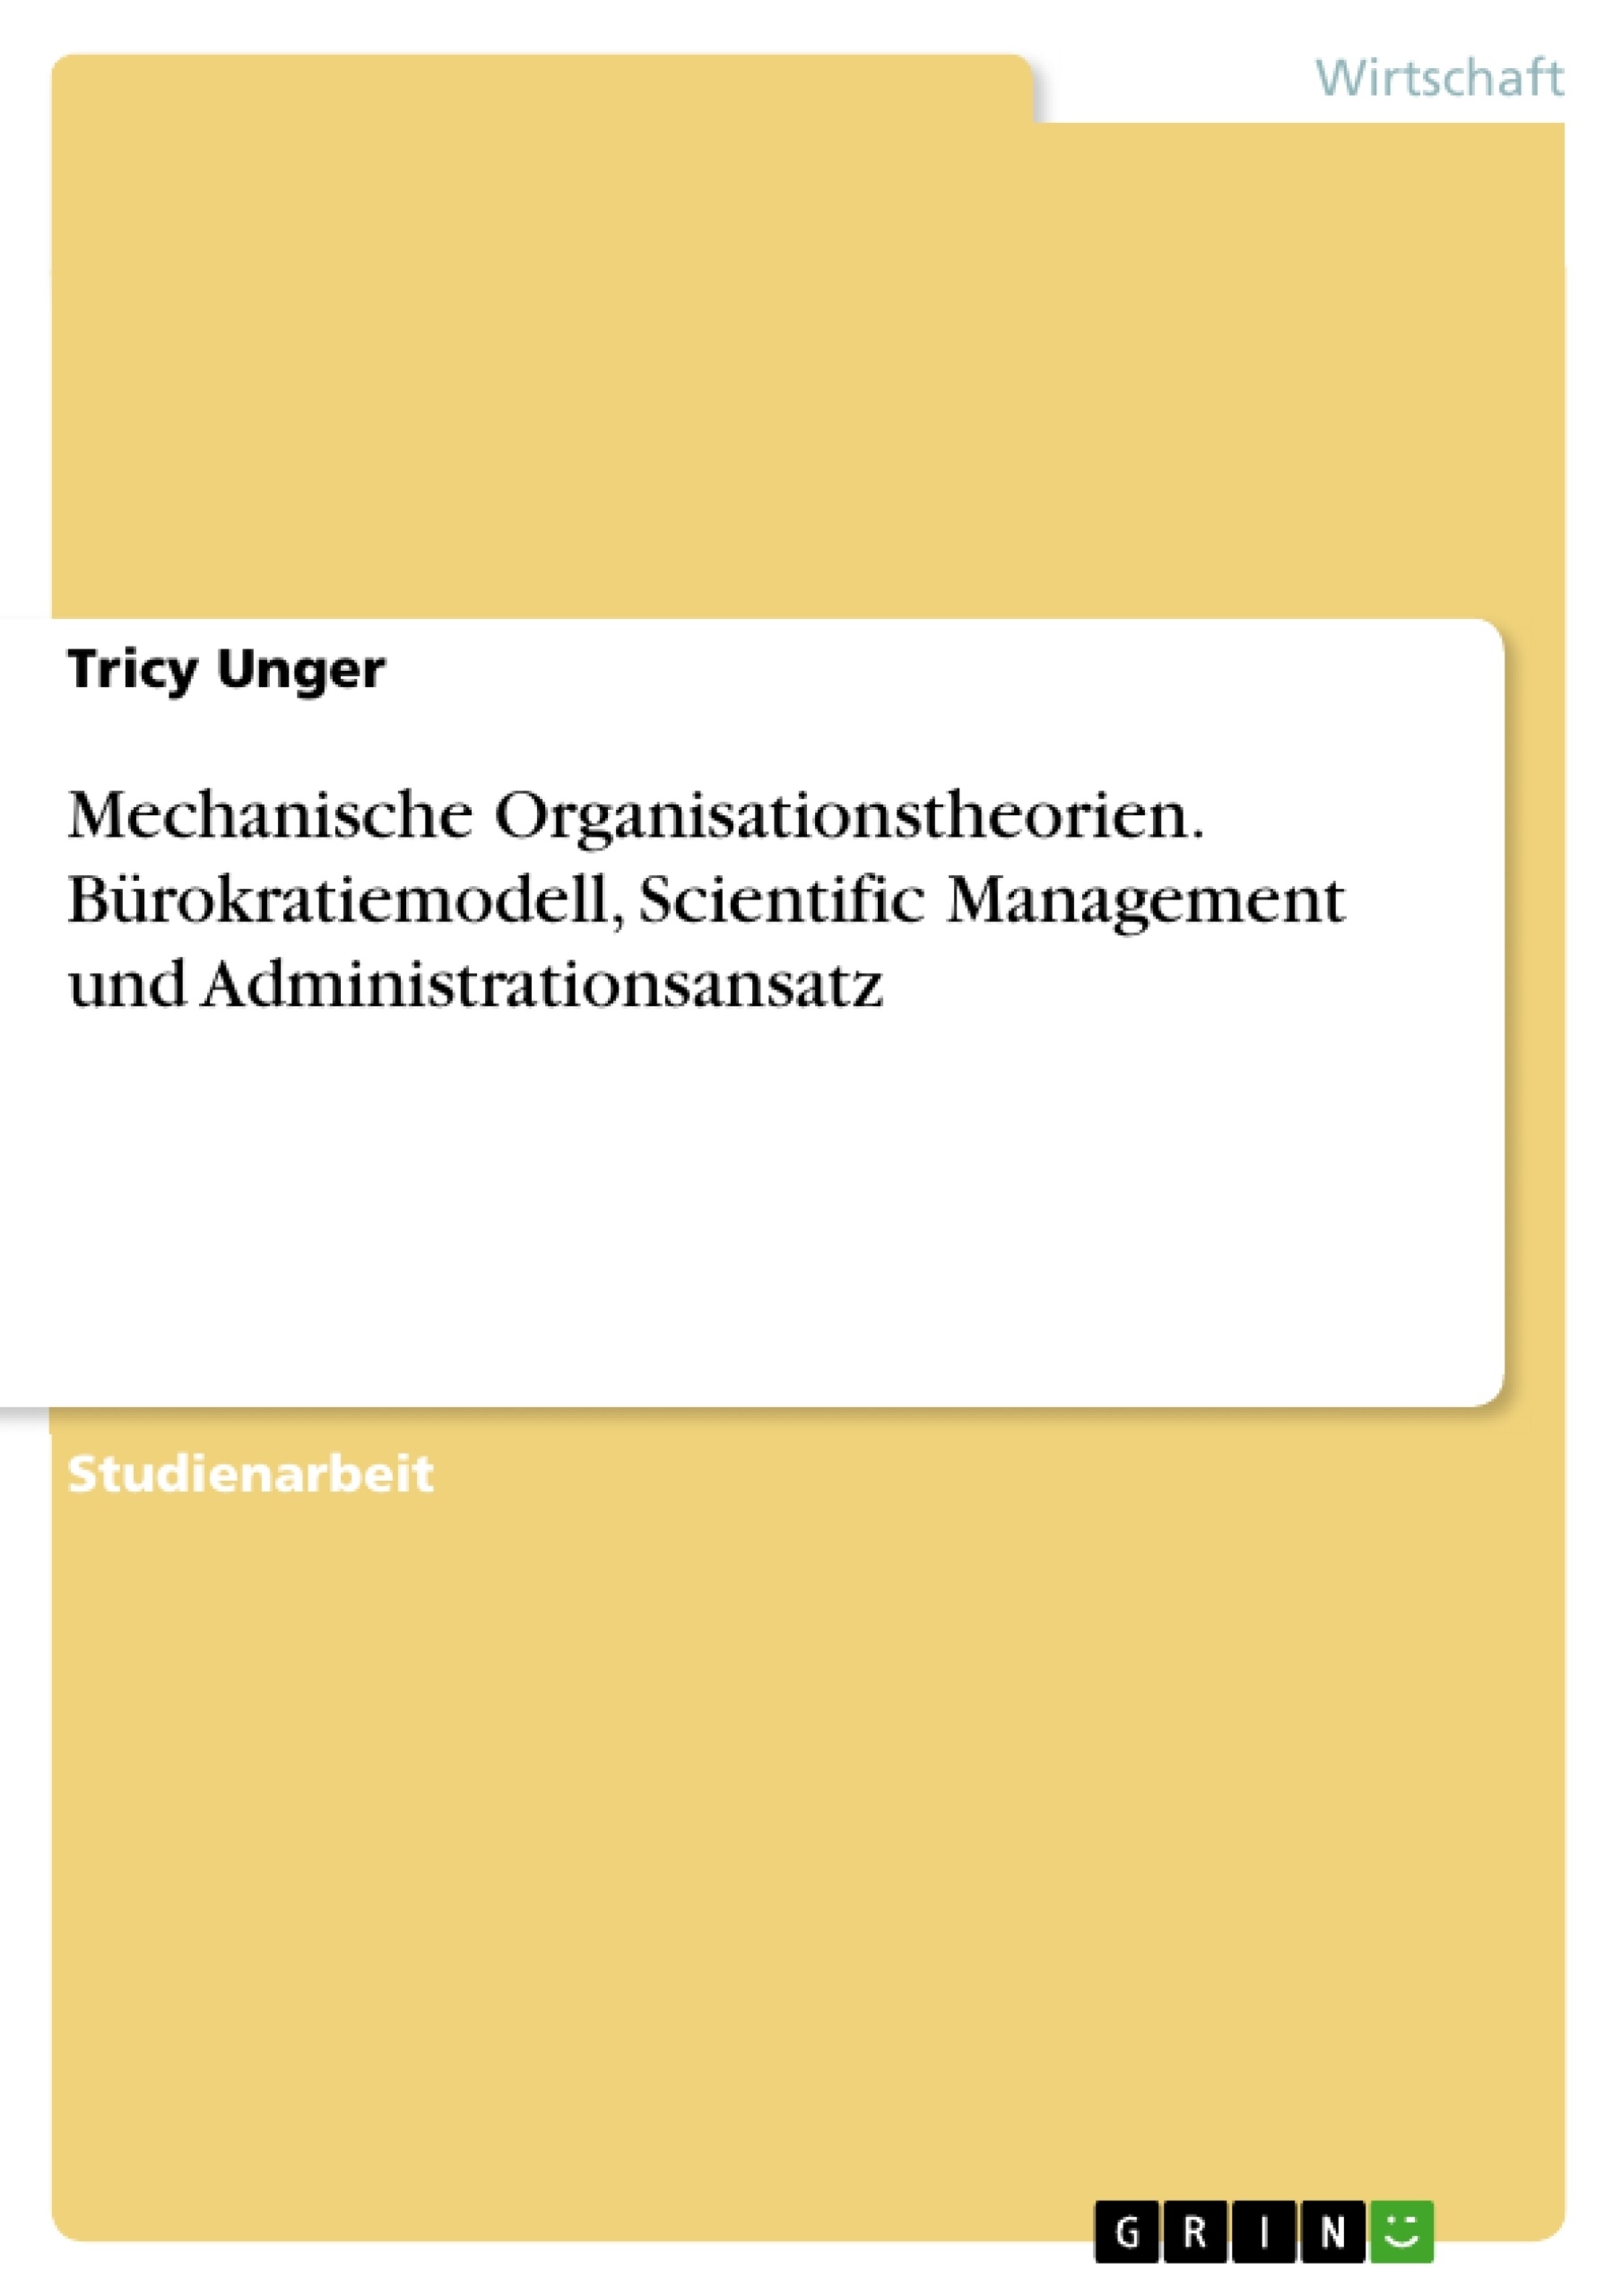 Title: Mechanische Organisationstheorien. Bürokratiemodell, Scientific Management und Administrationsansatz